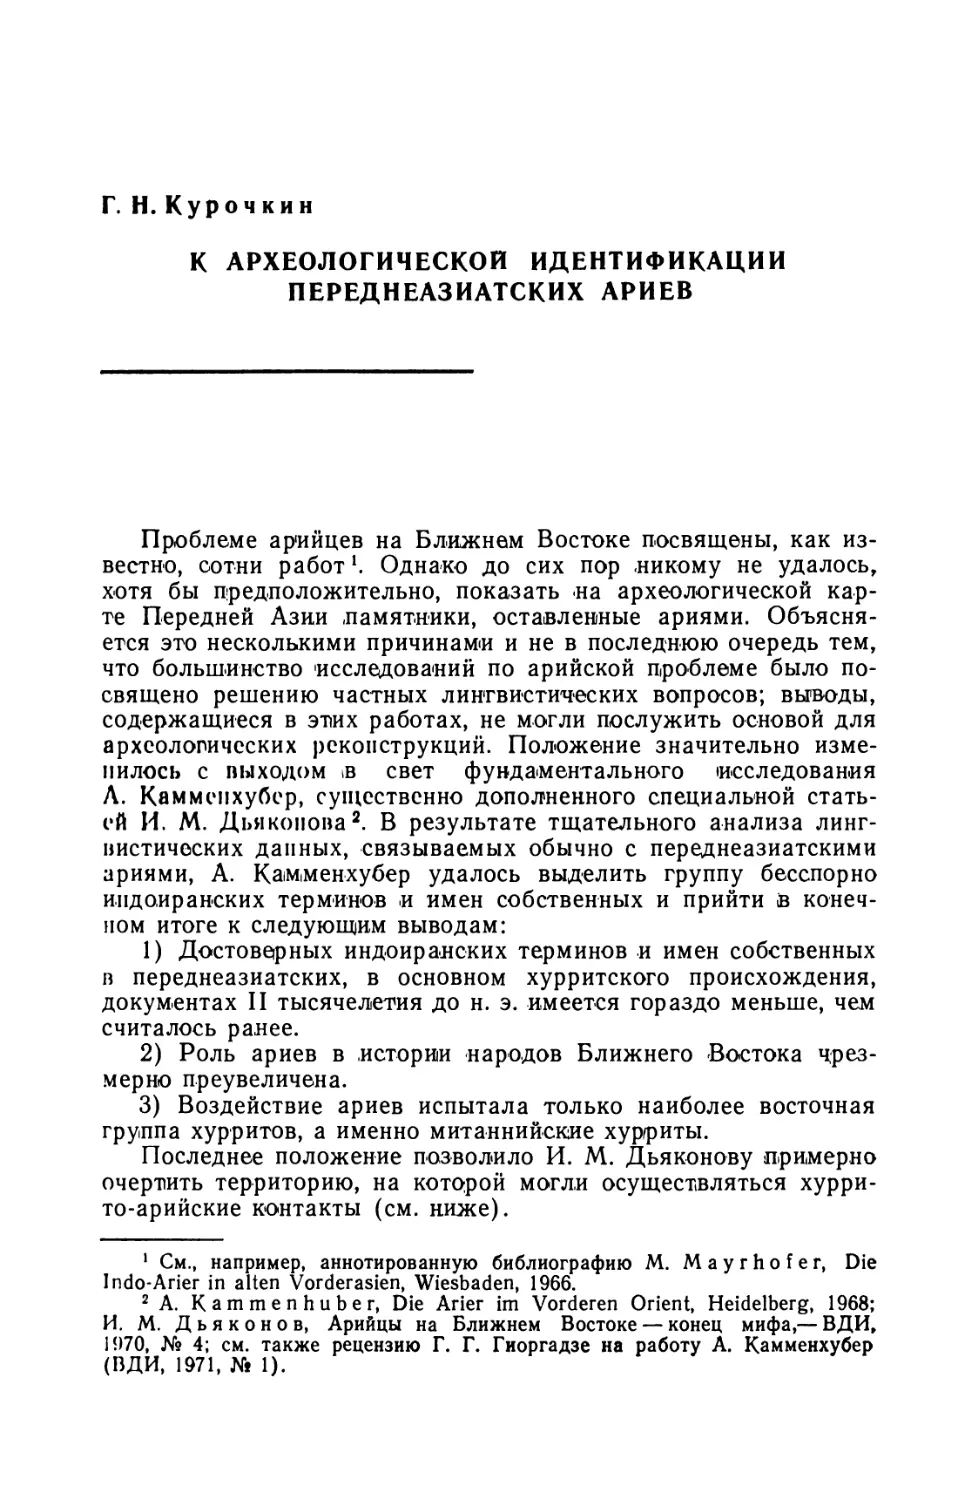 Г. Н. Курочкин, К археологической идентификации переднеазиатских ариев